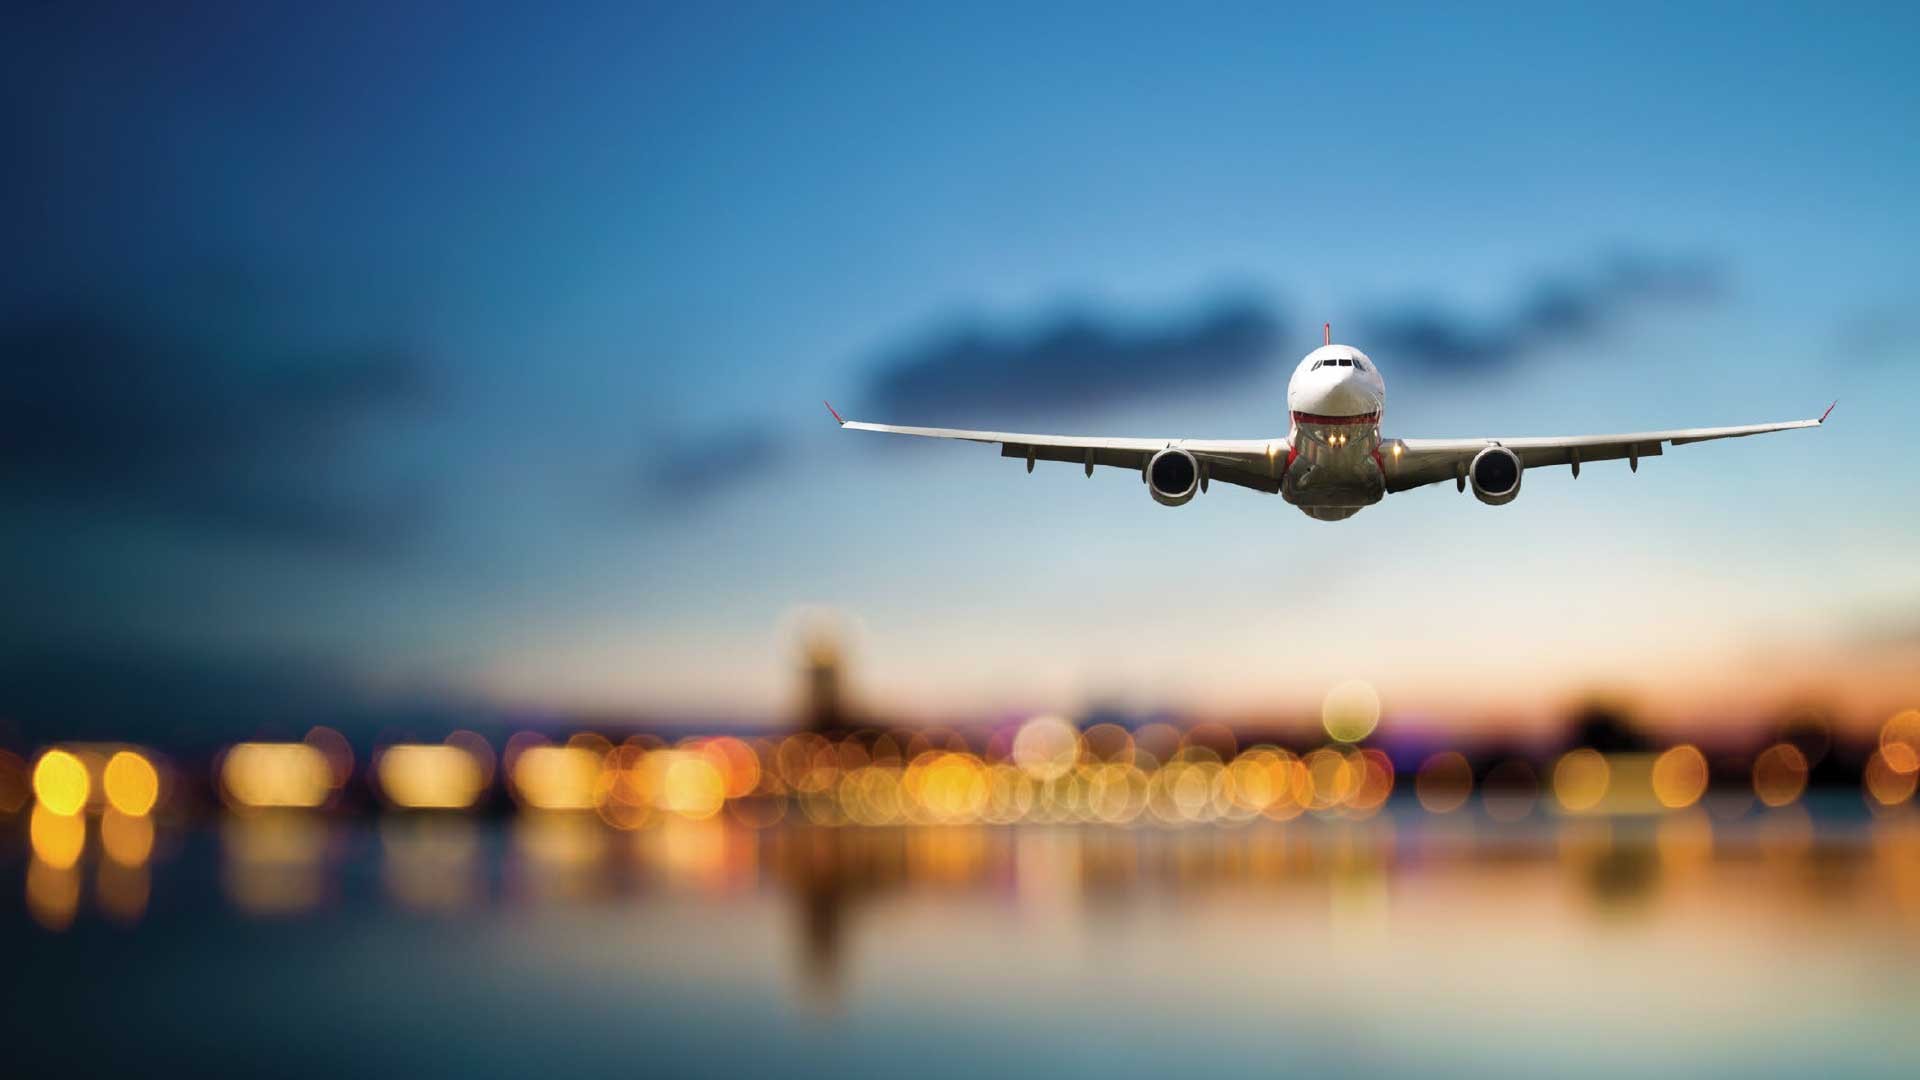 DNA suíço: administradora dos aeroportos de Florianópolis, Vitória e Macaé passa a se chamar Zurich Airport Brasil